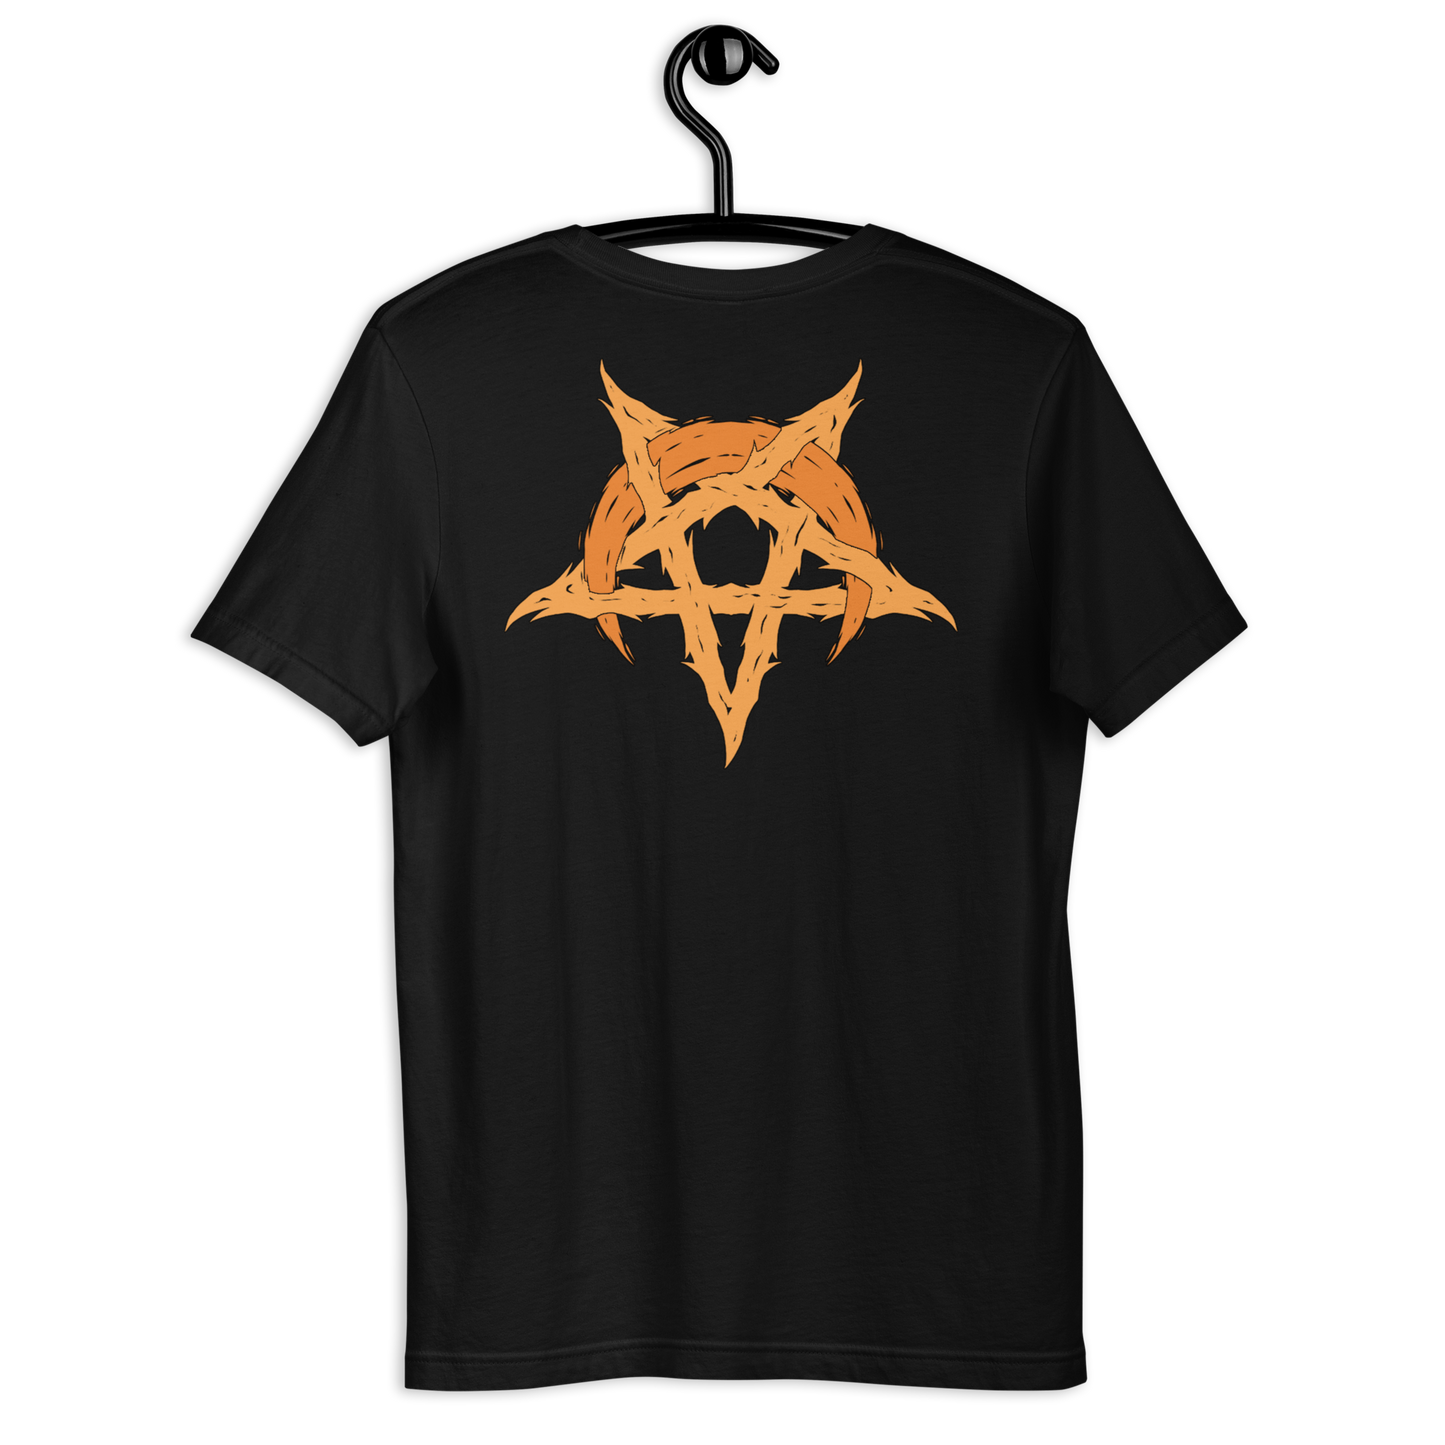 Avocyn "Burning Church II" - Unisex t-shirt